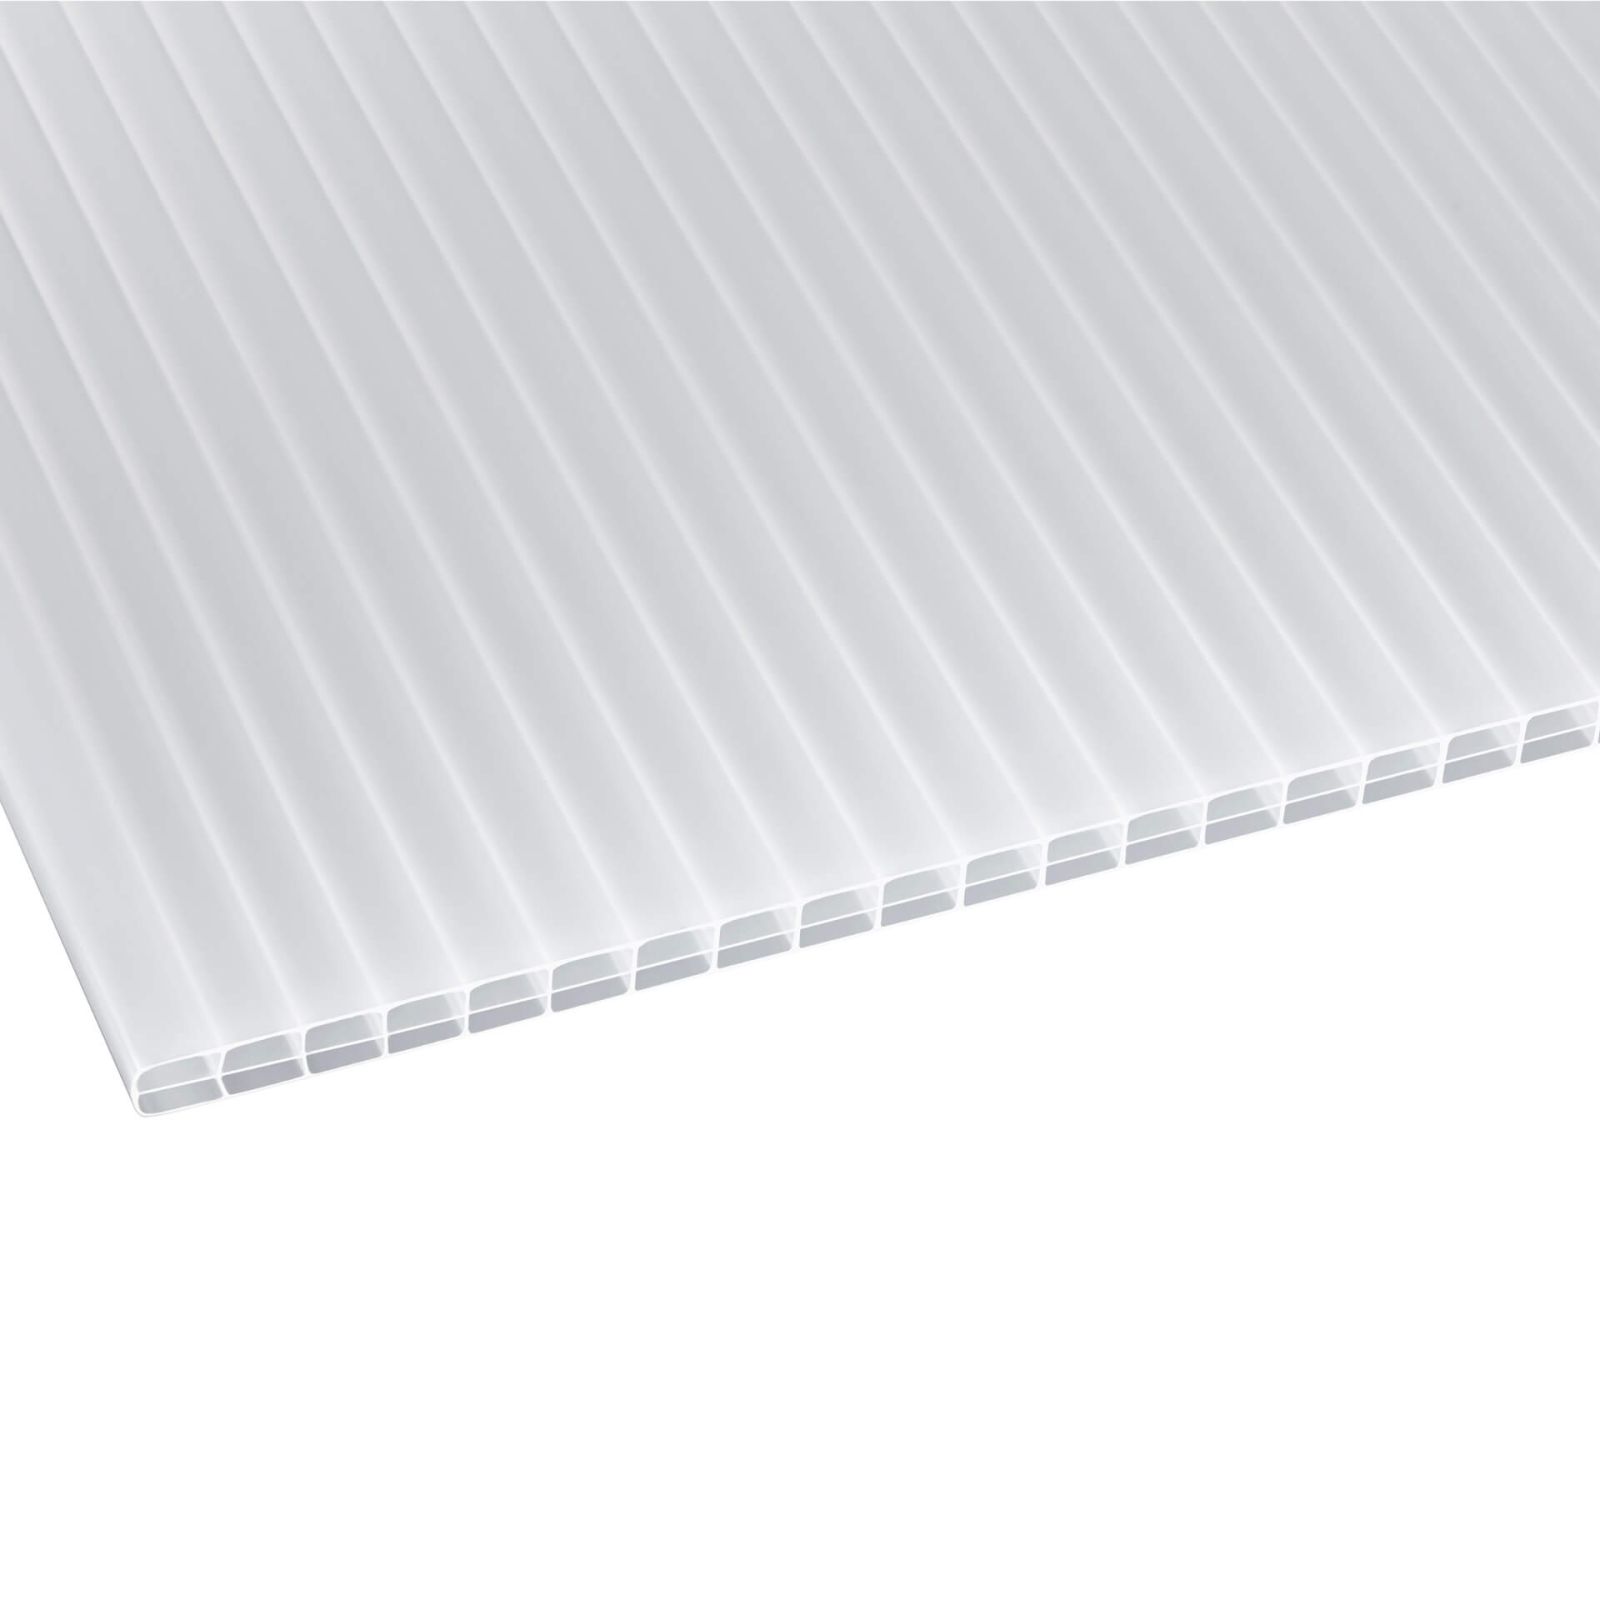 Polycarbonat Stegplatte | 16 mm | Breite 1200 mm | Opal Weiß | Beidseitiger UV-Schutz | 2000 mm #1